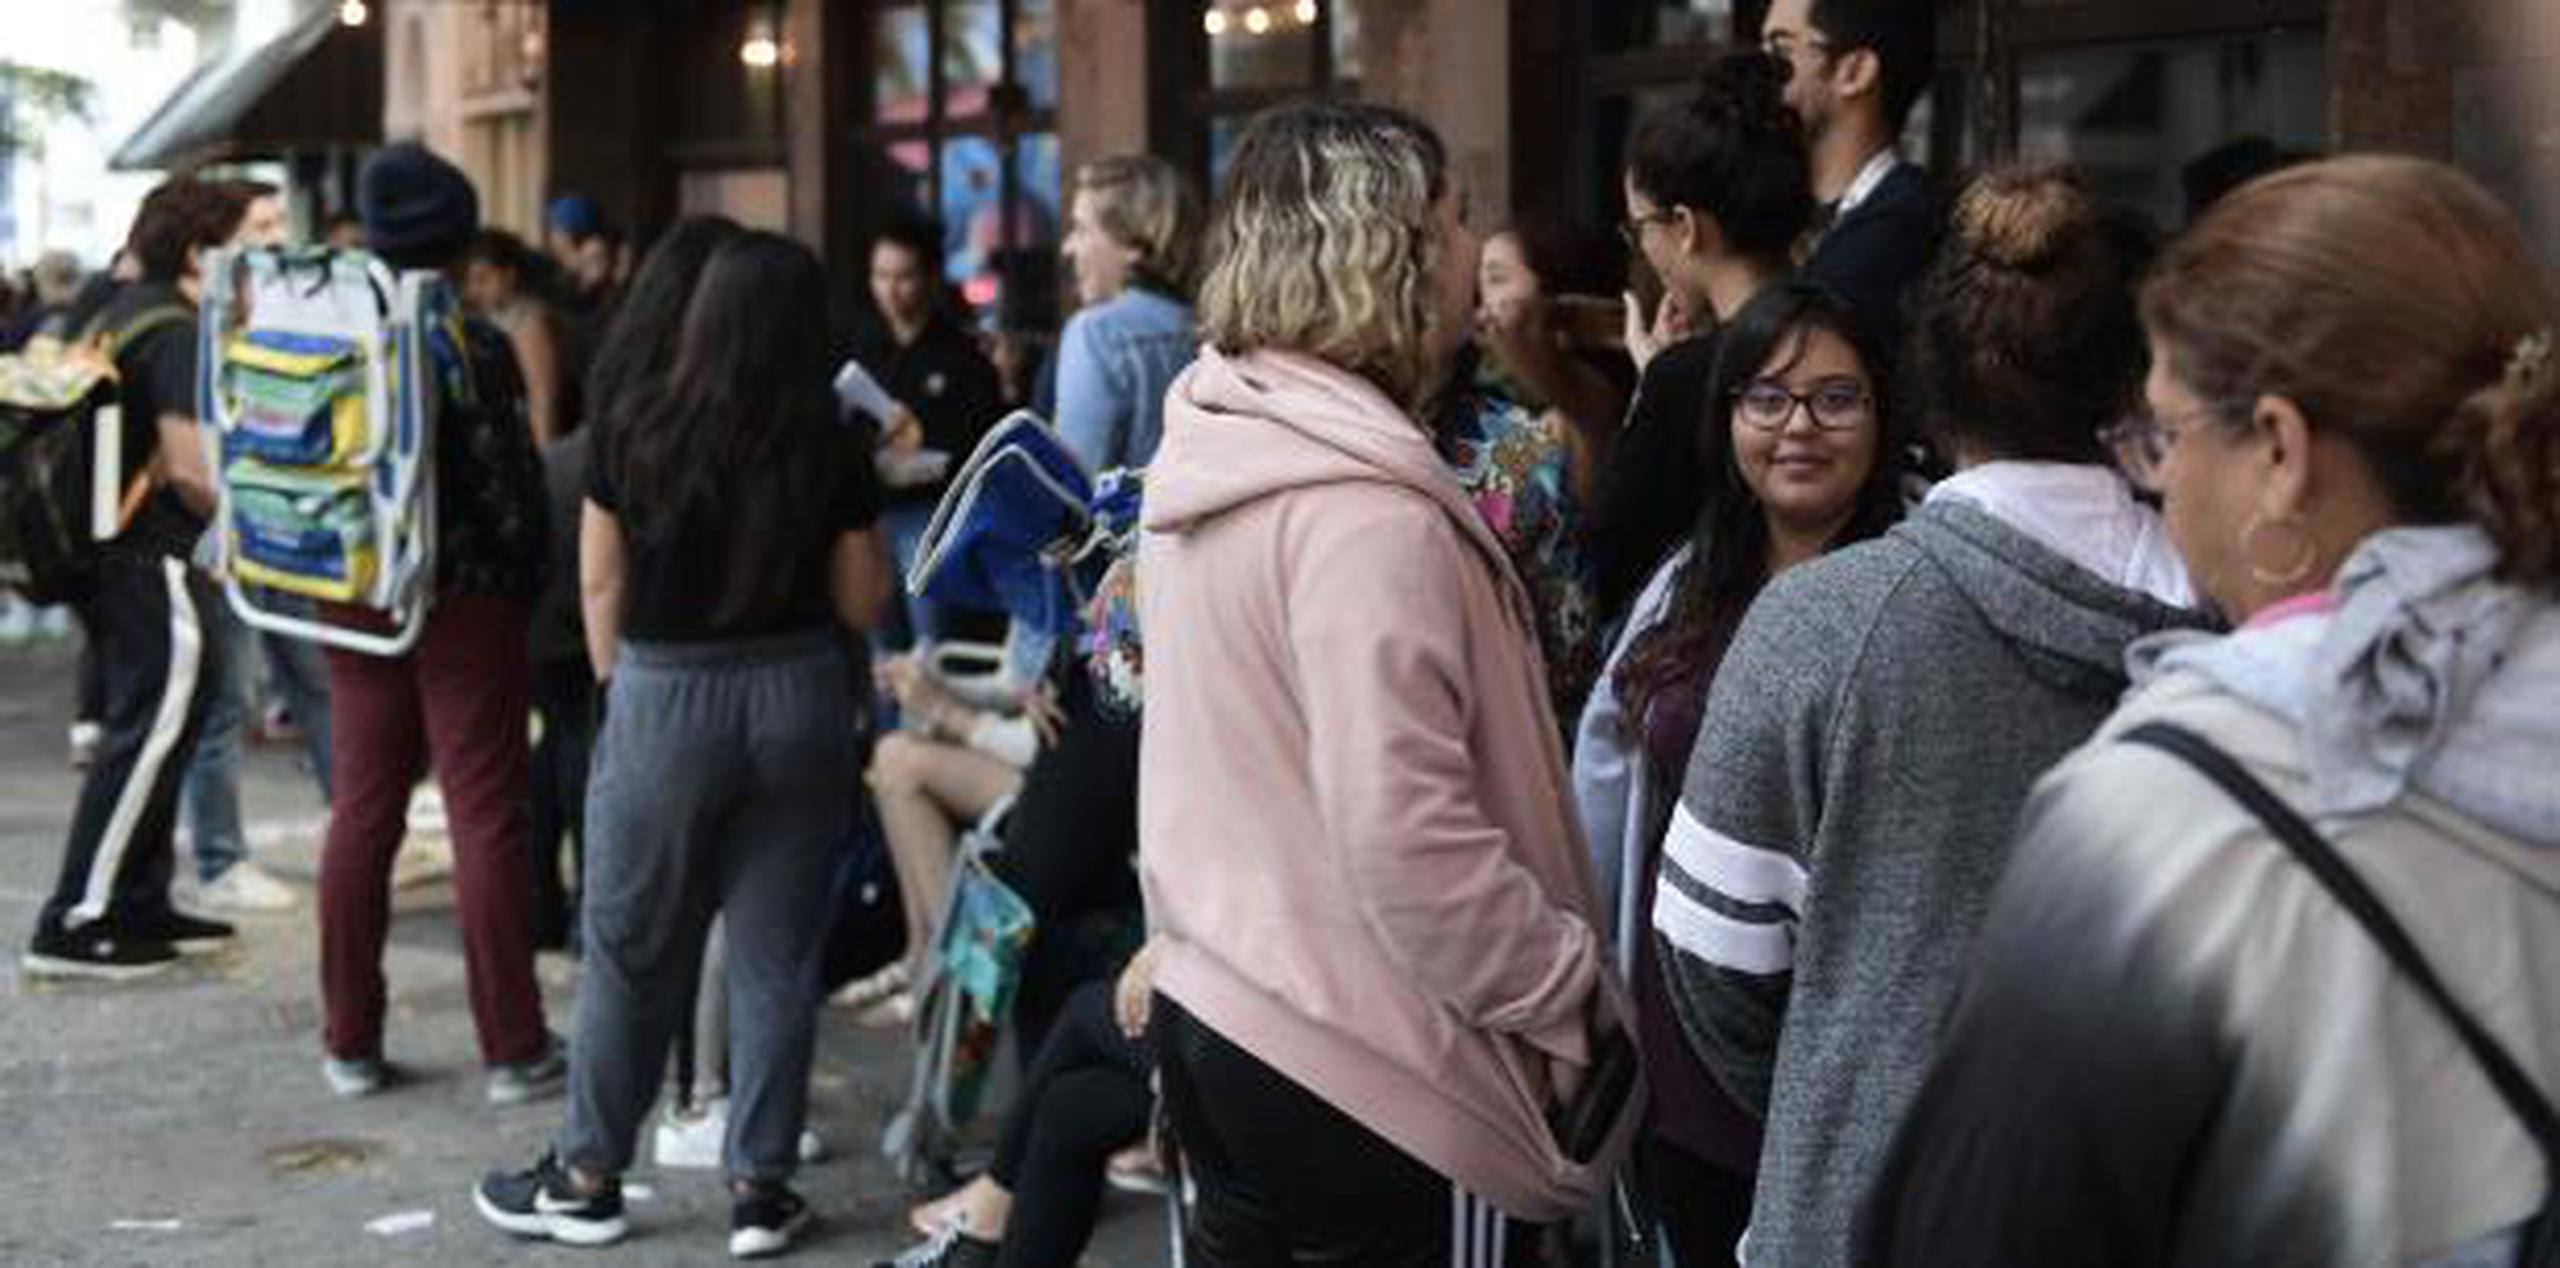 Jóvenes abrigados esta mañana haciendo fila para adquirir boletos para ver la puesta en escena de Hamilton en Santurce. (gerald.lopez@gfrmedia.com)